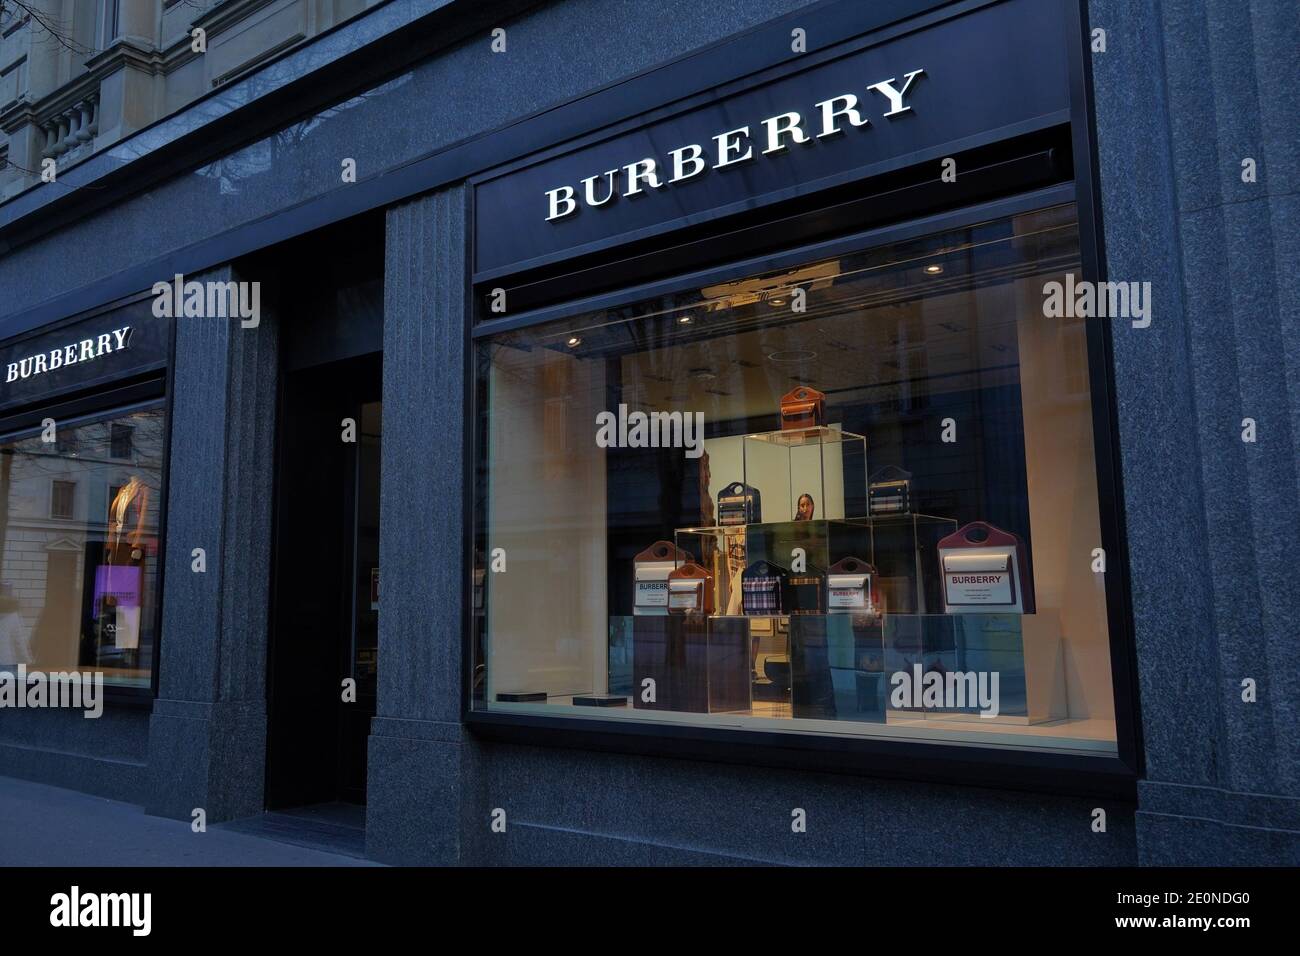 Boutique Des Labels Burberry Luxus Modehaus Englischer Herkunft In Zurich Das Label Produziert Accessoires Kleidung Trenchcoats Kosmetik Stockfotografie Alamy